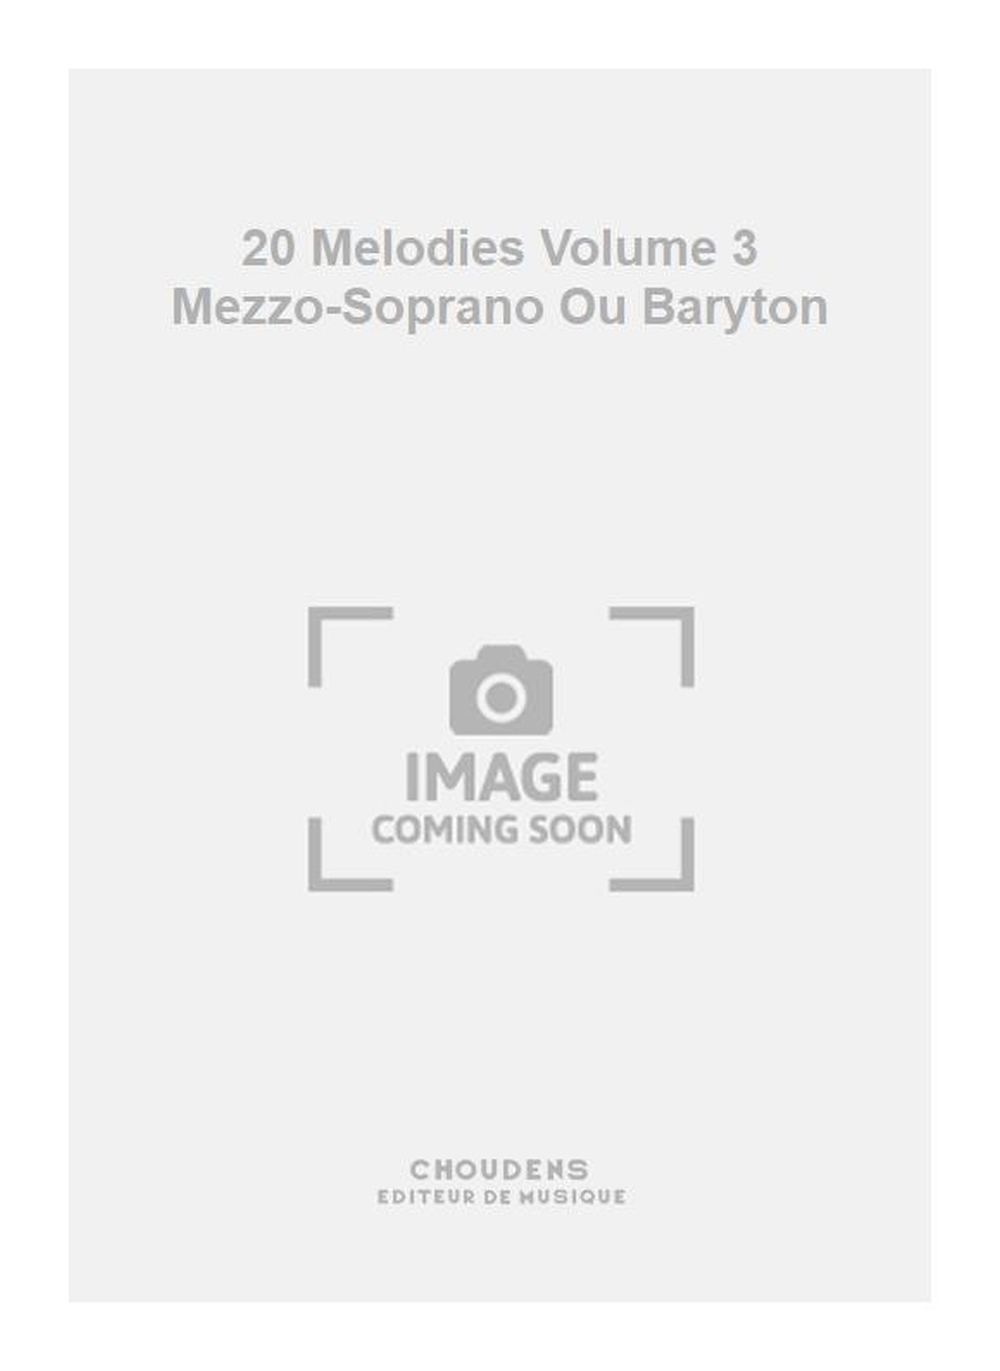 Charles Gounod: 20 Melodies Volume 3 Mezzo-Soprano Ou Baryton